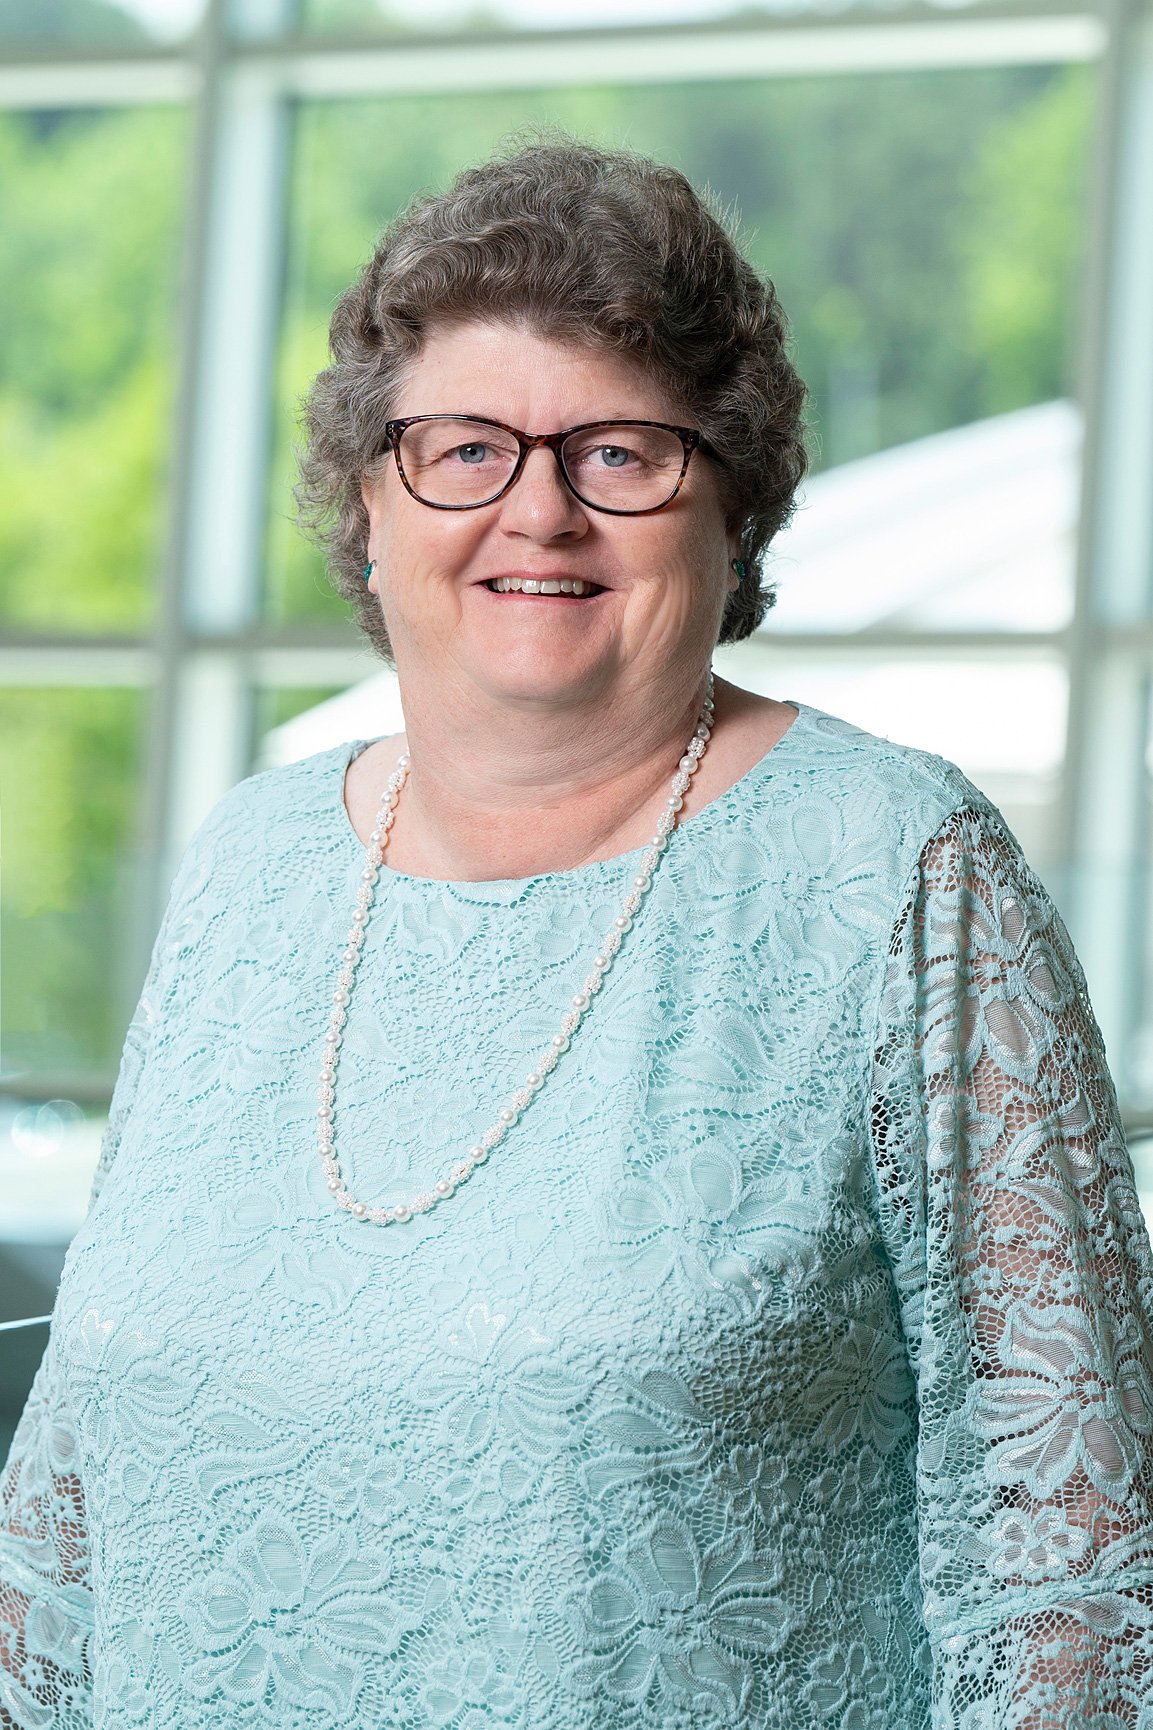 Mary Strickland, Interim Vice President, Associate Chief Nursing Officer